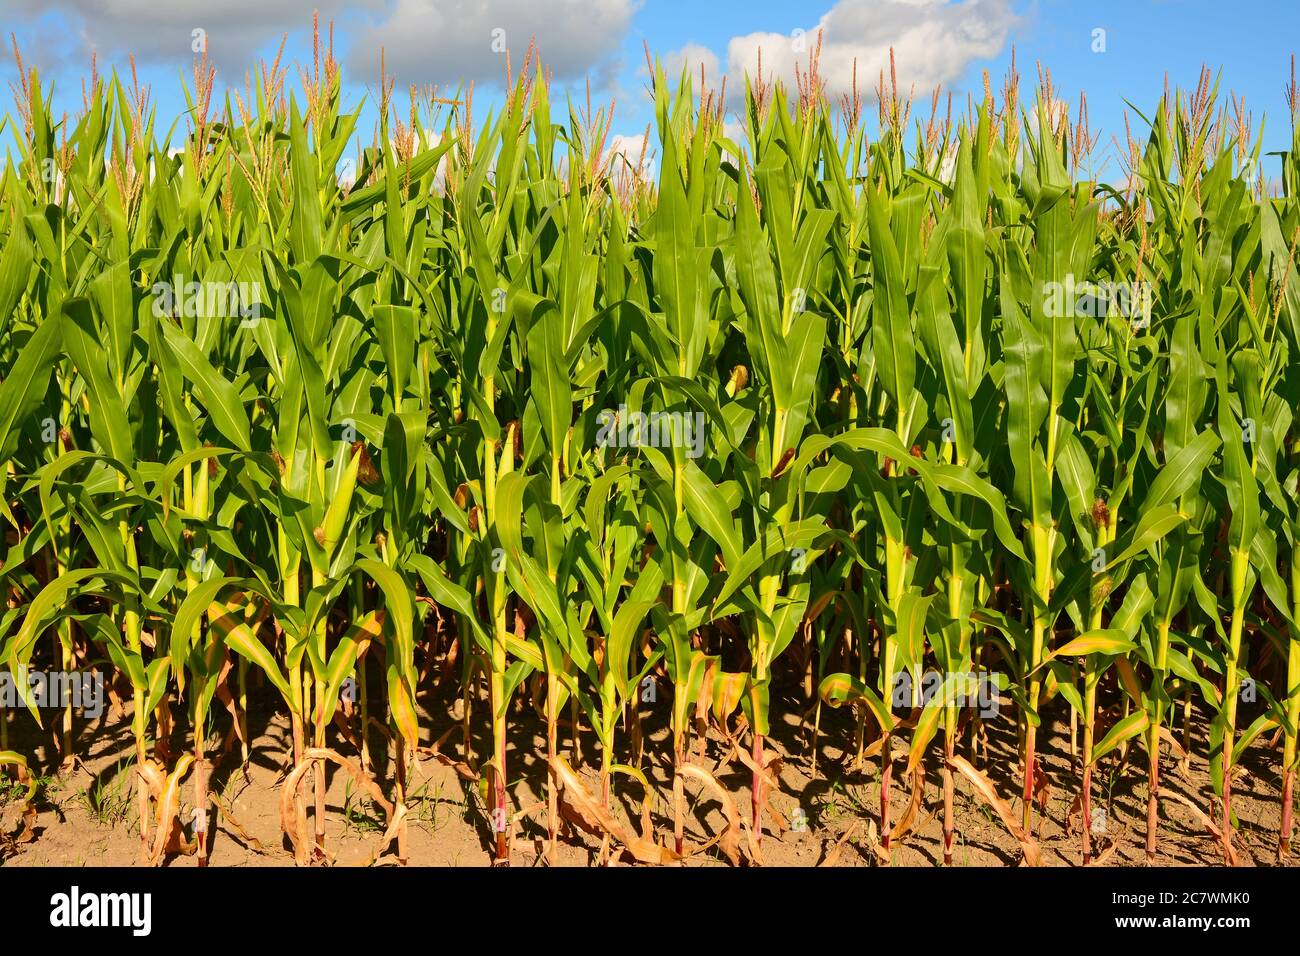 Corn field, North America Stock Photo